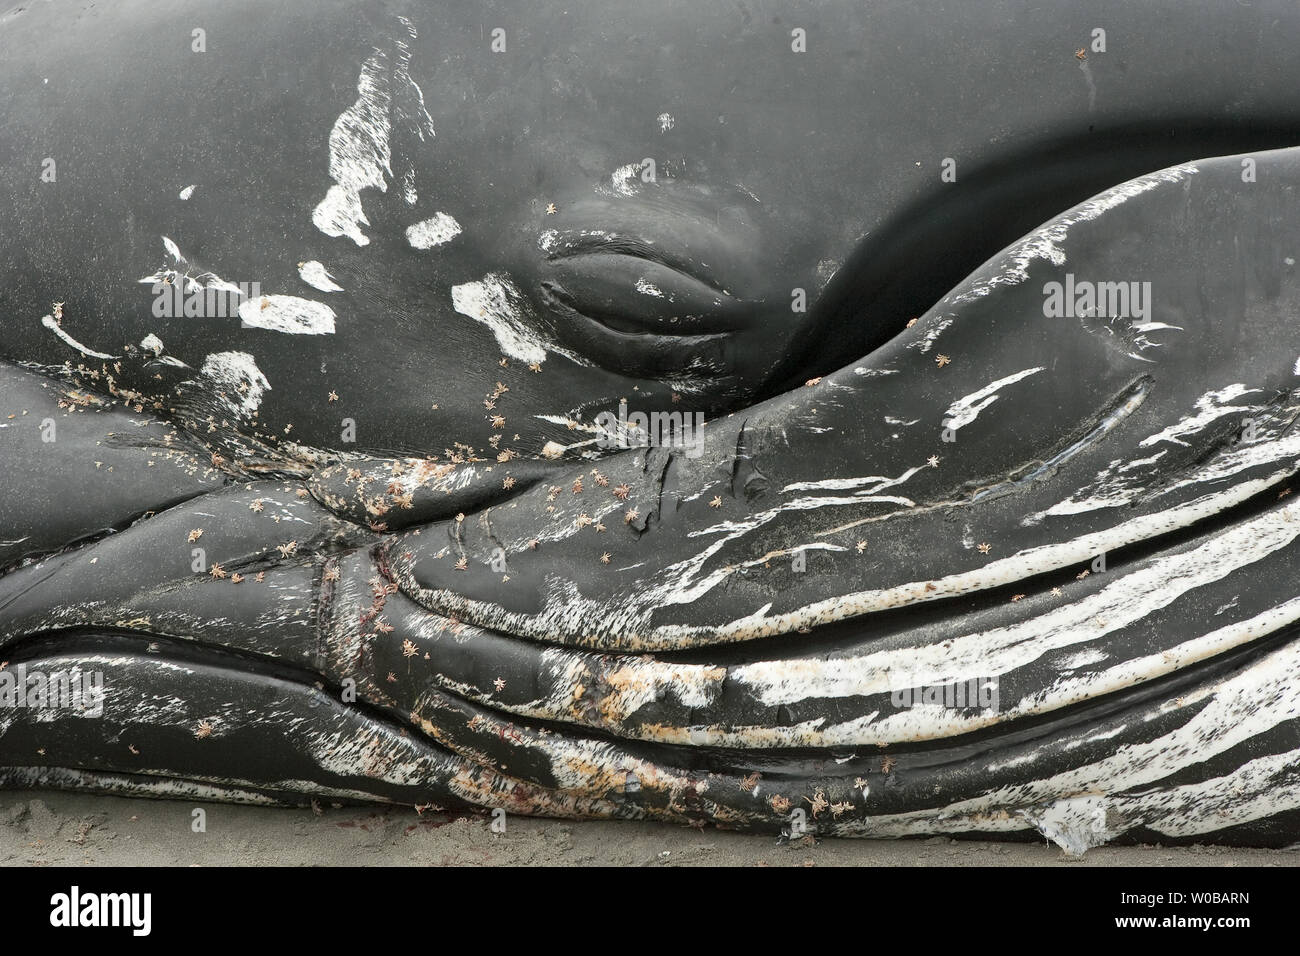 Durch den Tag Massen von Menschen sehen eine acht bis zehn Meter langen JUVENILEN Buckelwal, welche kurz nach dem Waschen auf dem Strand in White Rock in der Nähe von Vancouver, British Columbia, am frühen Morgen, 12. Juni 2012 gestorben ist, trotz der Bemühungen von Menschen, die versucht, es zu speichern. Der Wal war vernarbt, Läuse und offenen Geschwüren bedeckt und erschien unterernährt, wahrscheinlich zu schwach am frühen Morgen eingehende Flut zu kämpfen. UPI/Heinz Ruckemann Stockfoto